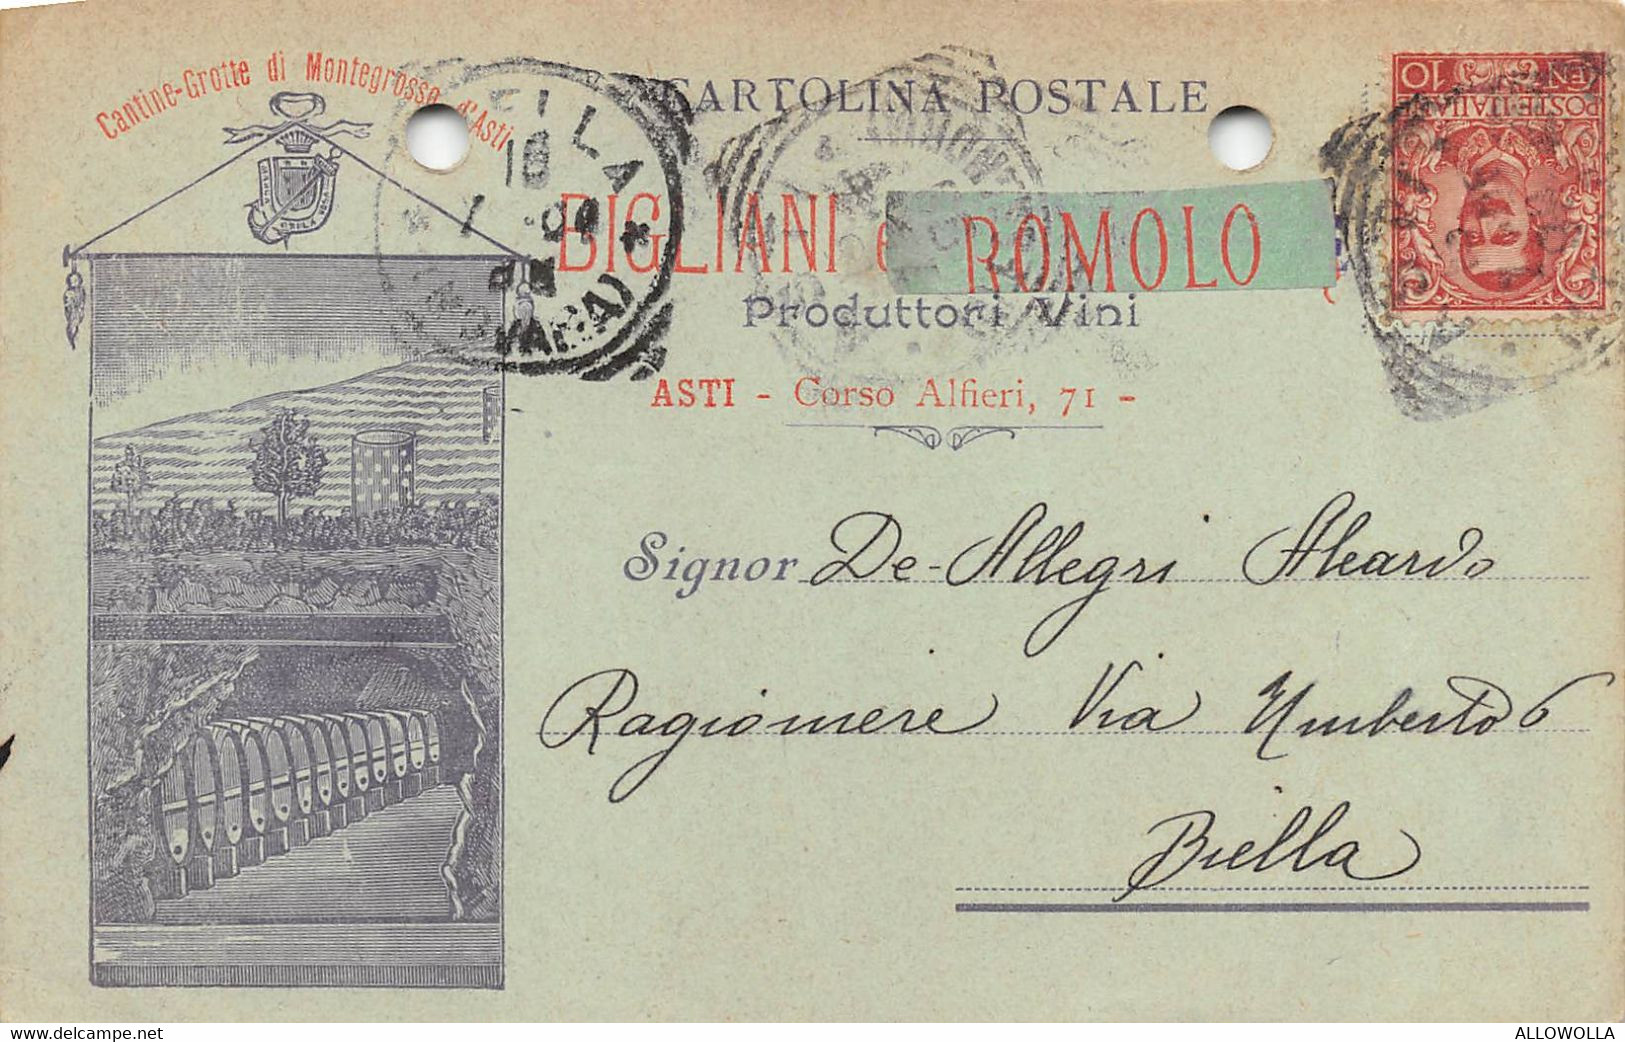 15811" BIGLIANI E ROMOLO-PRODUTTORI VINI-ASTI "-CART. POST. SPED. 1904 - Marchands